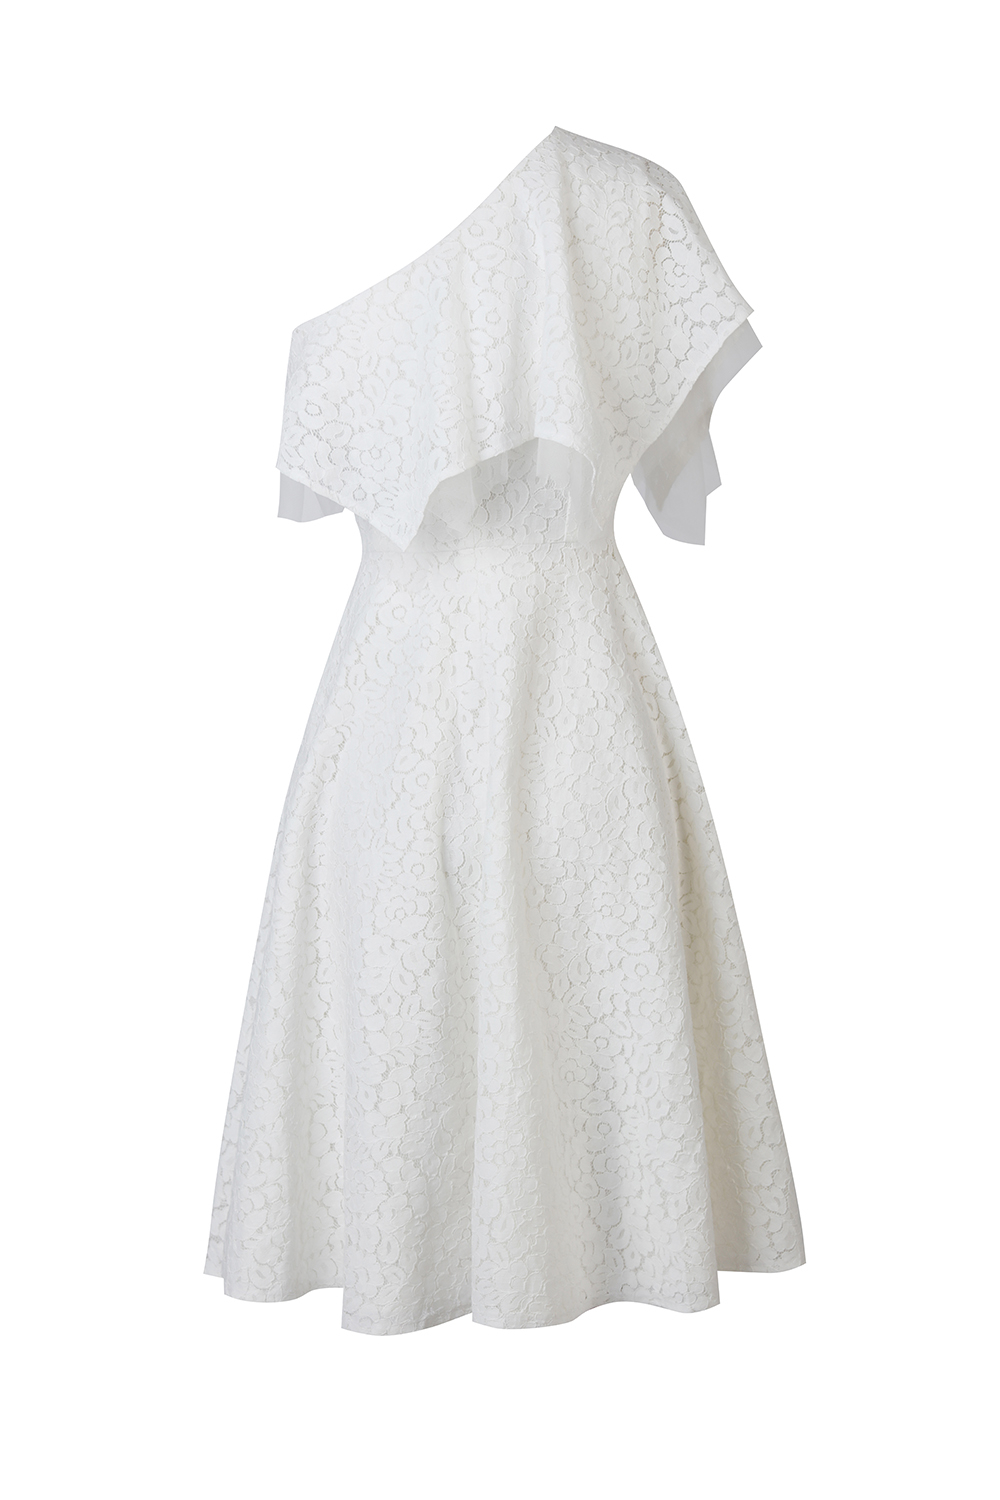 Đầm xòe màu trắng thiết kế hai dây sang trọng  Đầm xòe đẹp